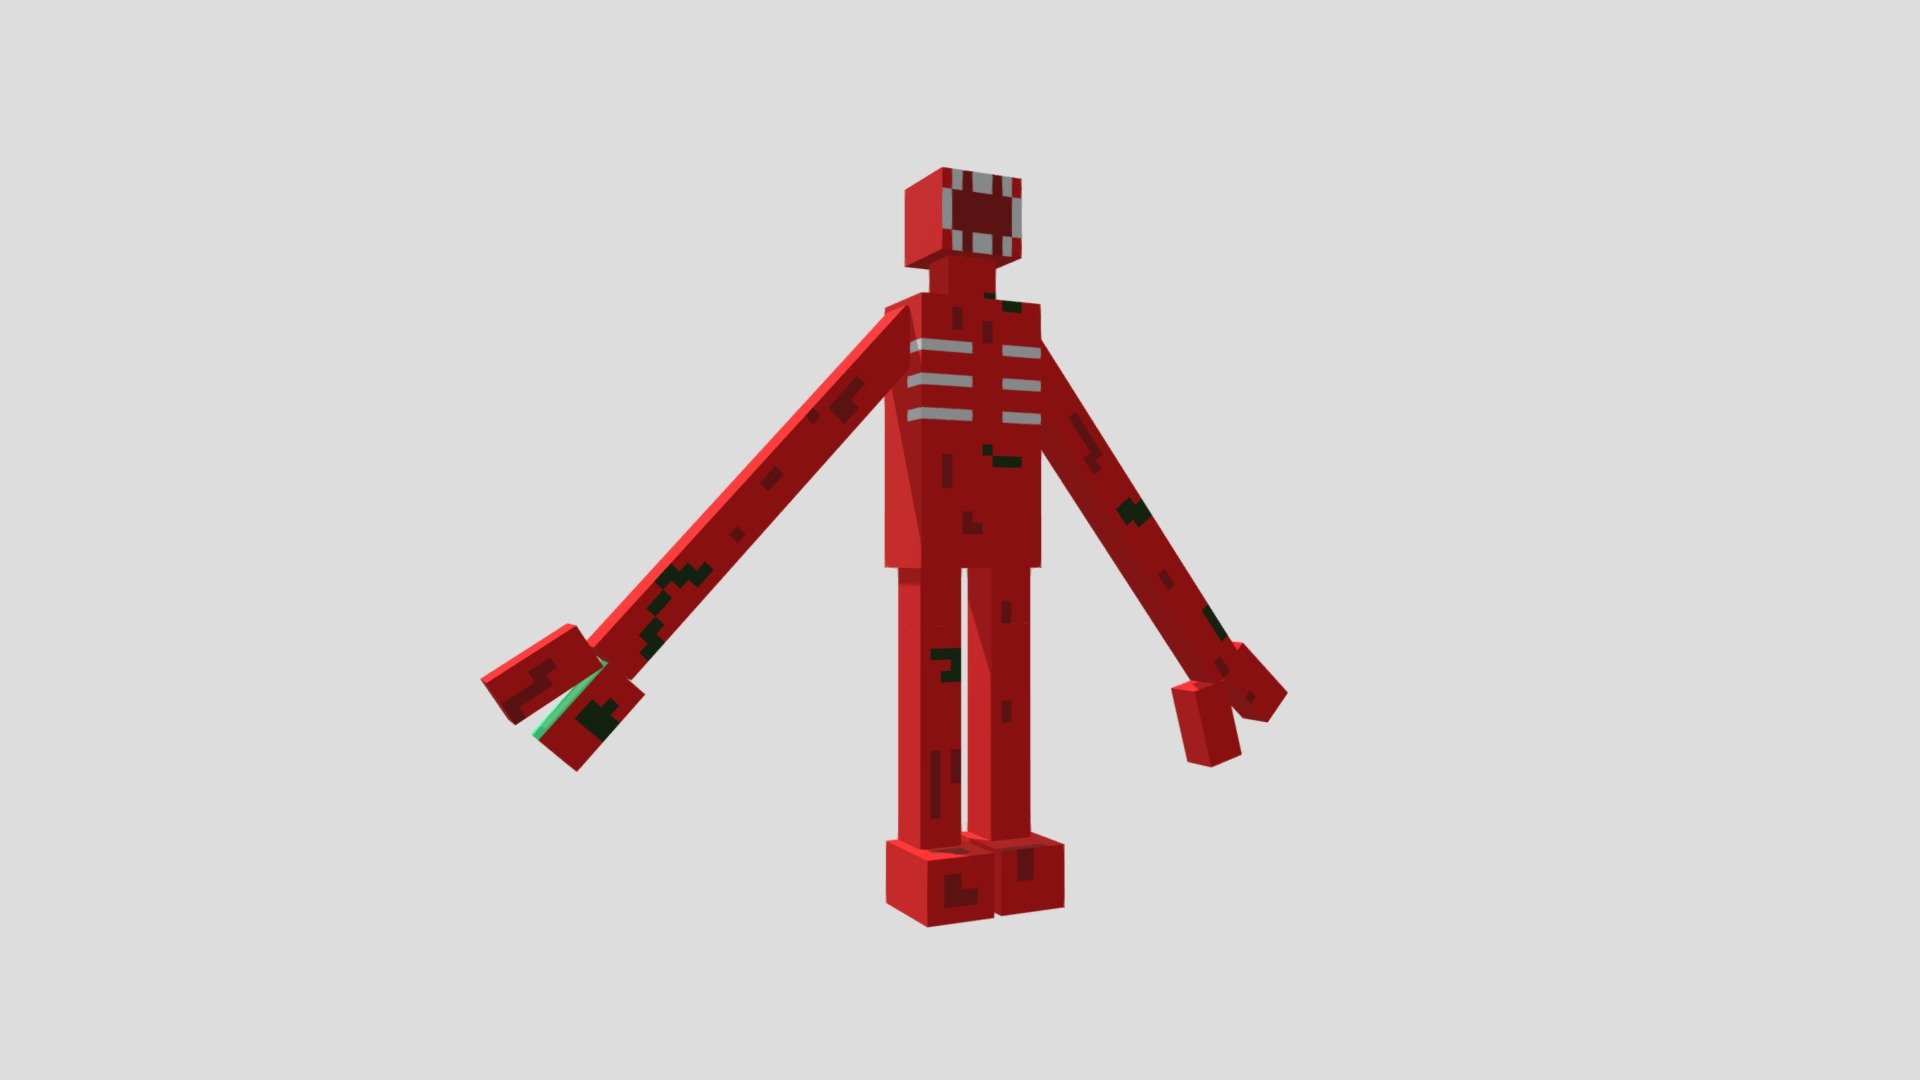 Figure  Roblox DOORS Minecraft Mob Skin